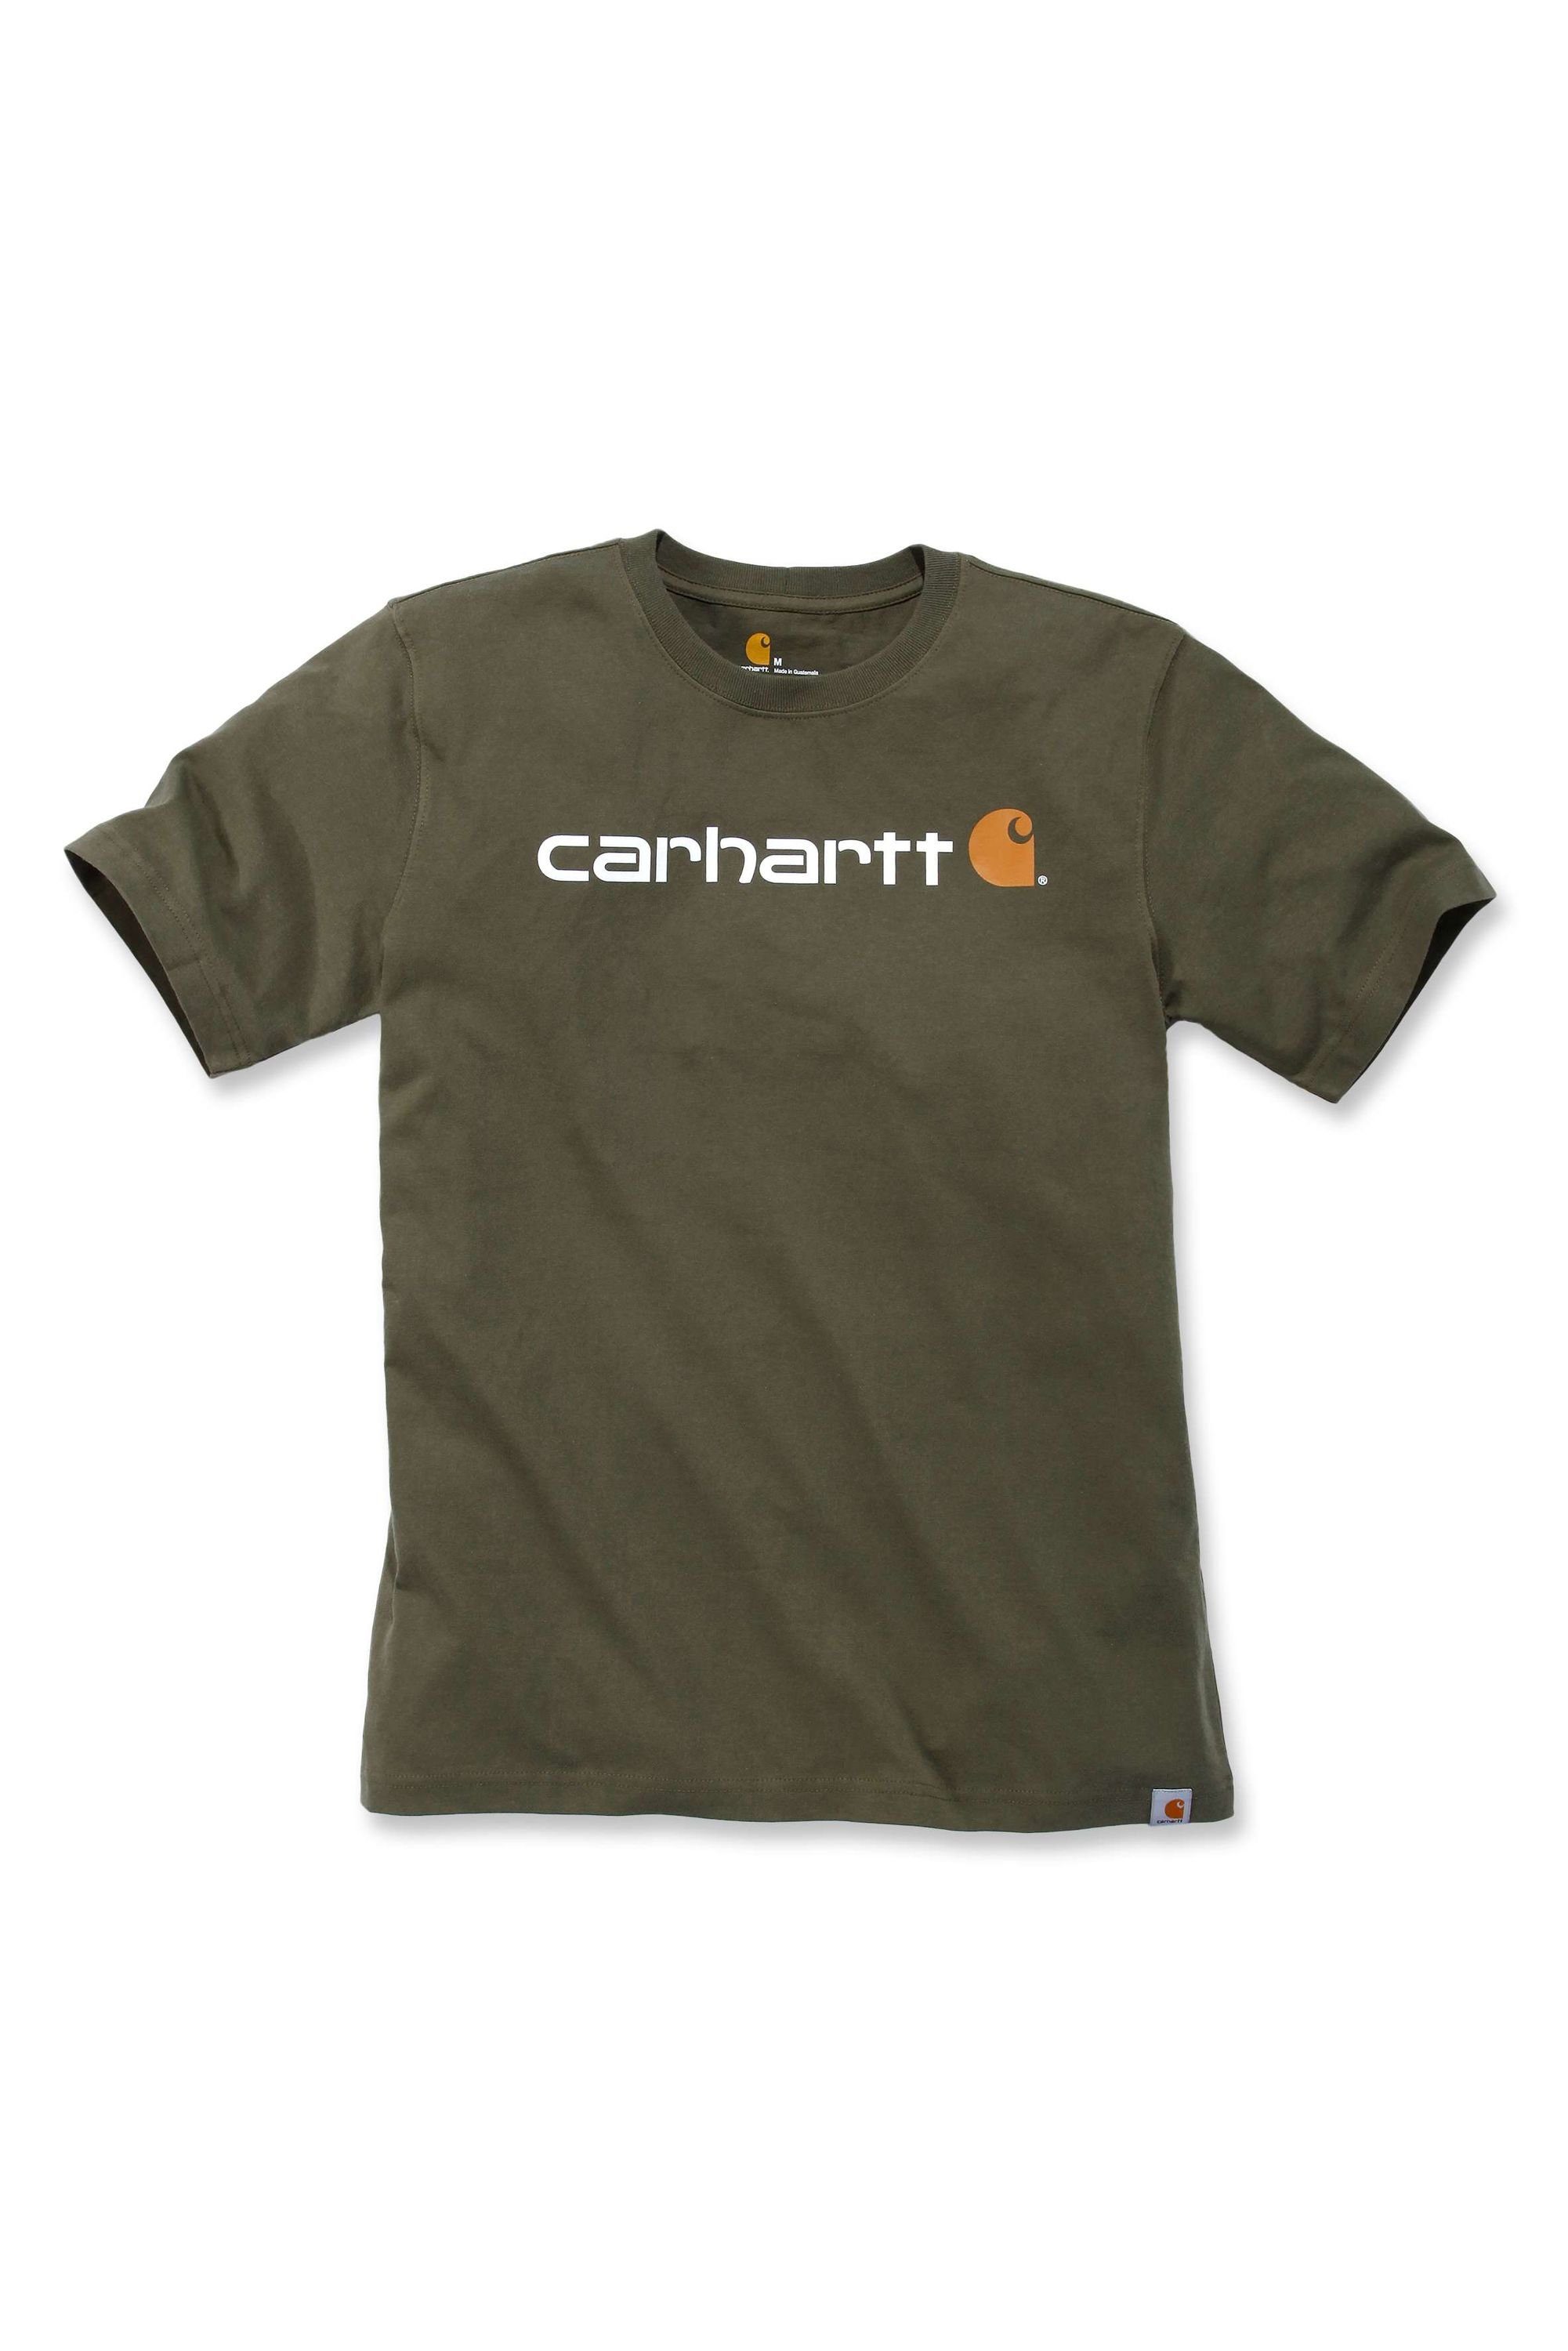 Carhartt T-Shirt Carhartt CORE LOGO carbon (1-tlg) heather der S/S 103361 auf Logo T-SHIRT Brust